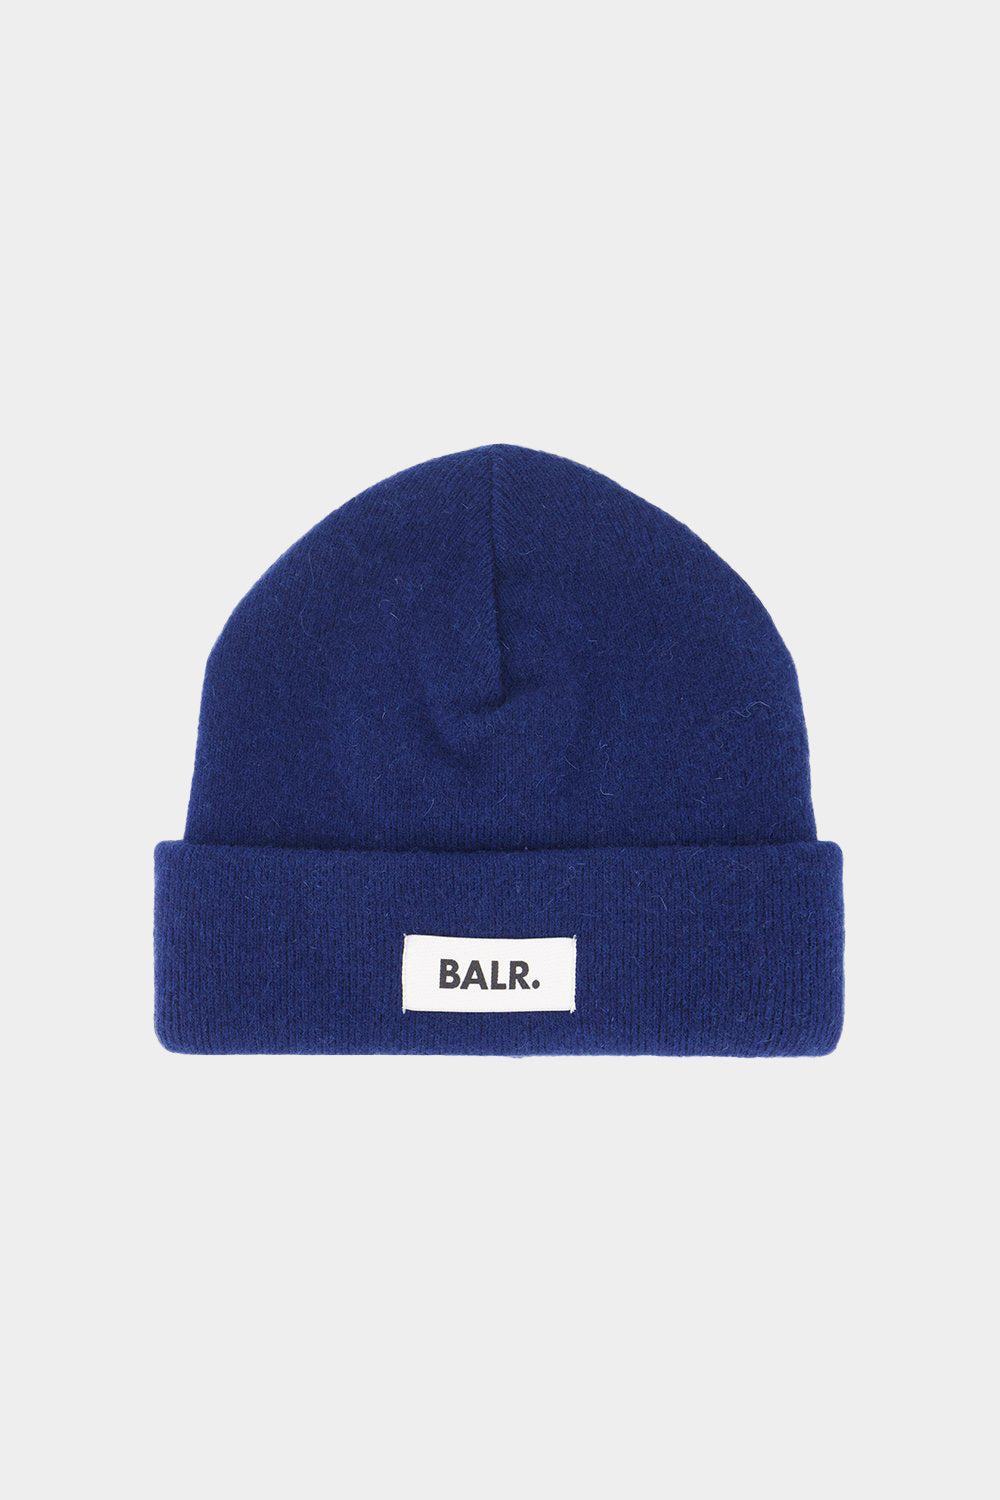 כובע גרב לגברים תווית לוגו BALR Vendome online | ונדום .